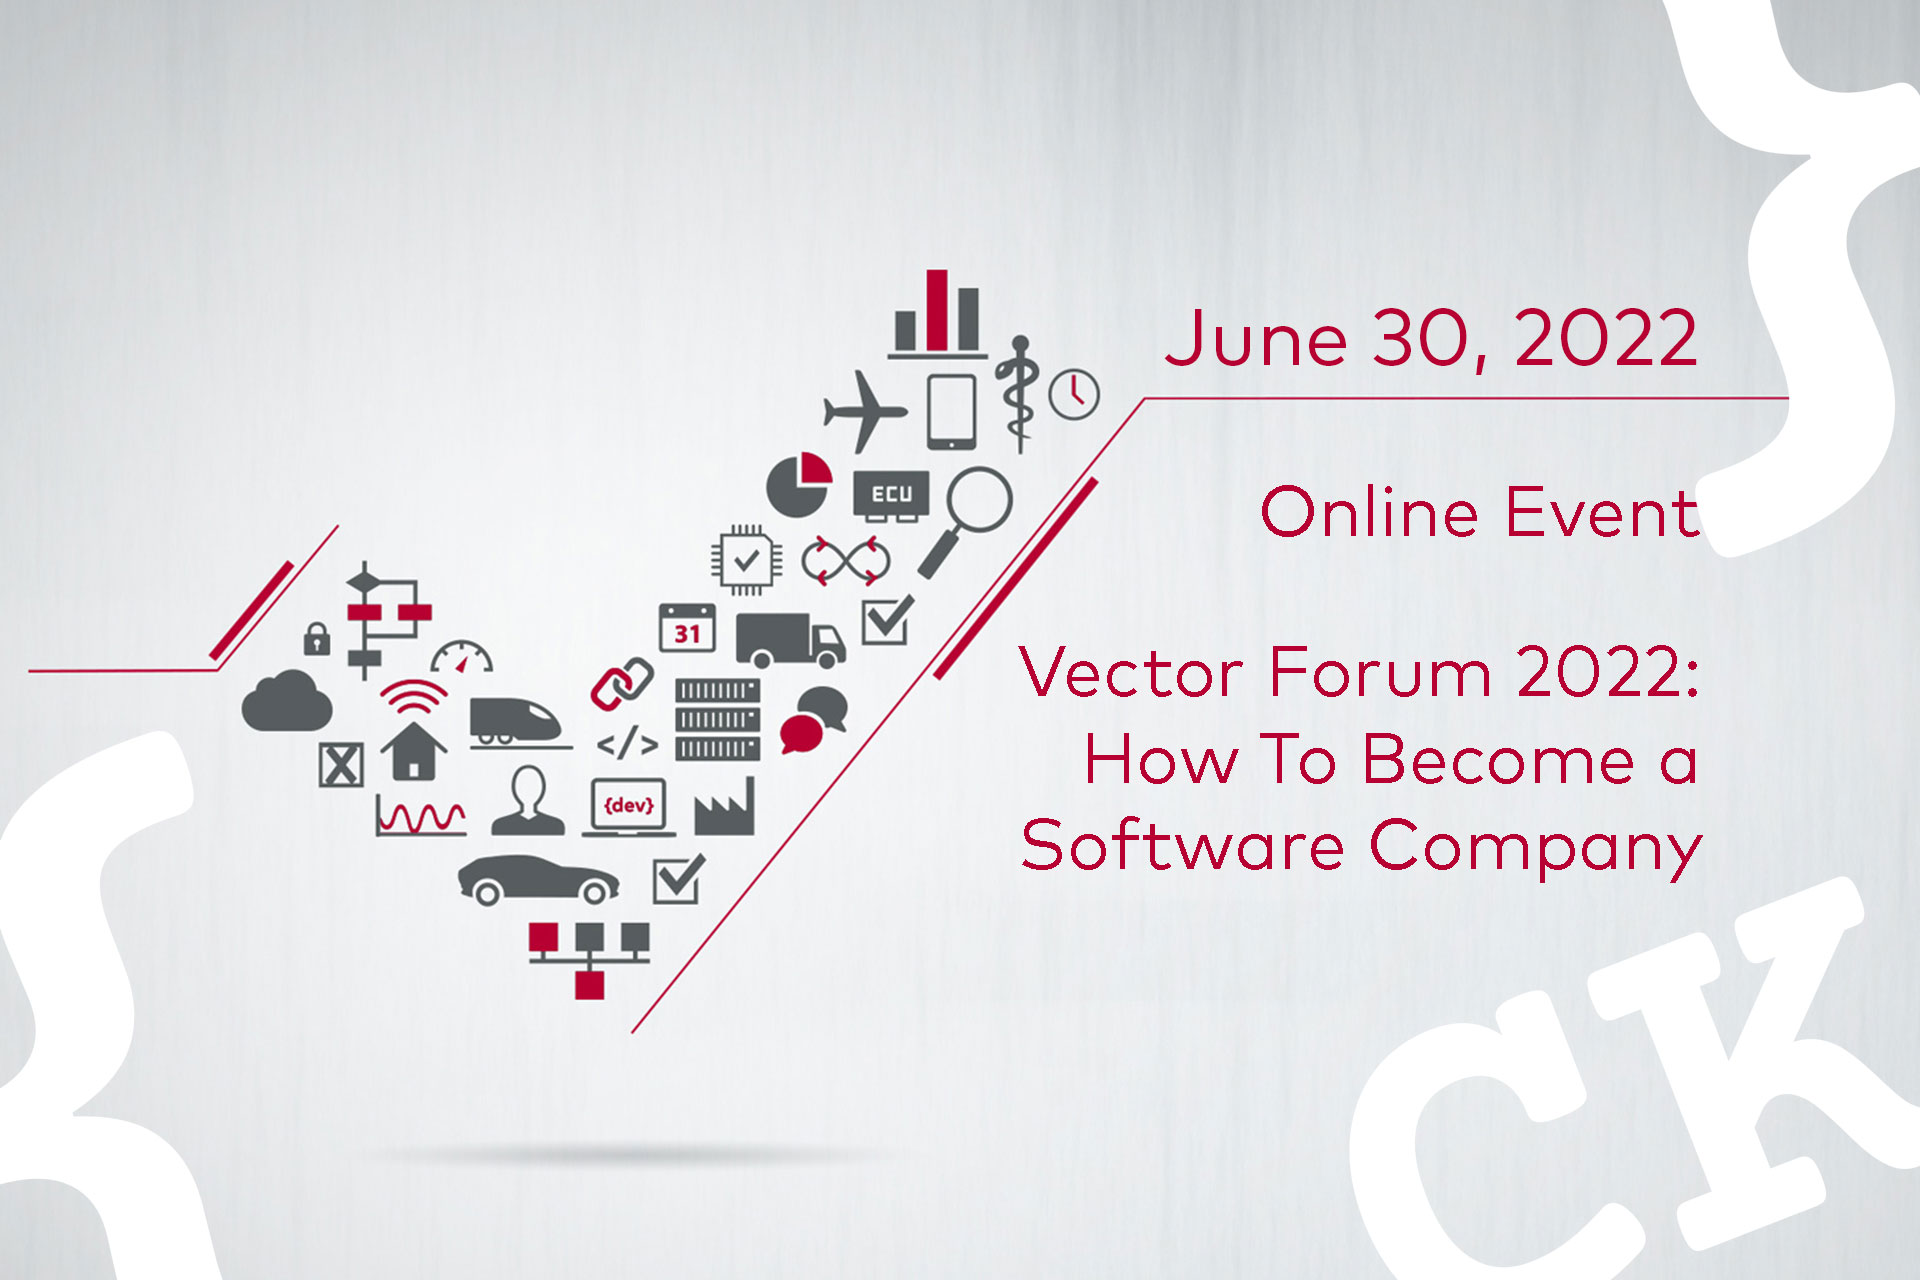 Vector Forum 2022